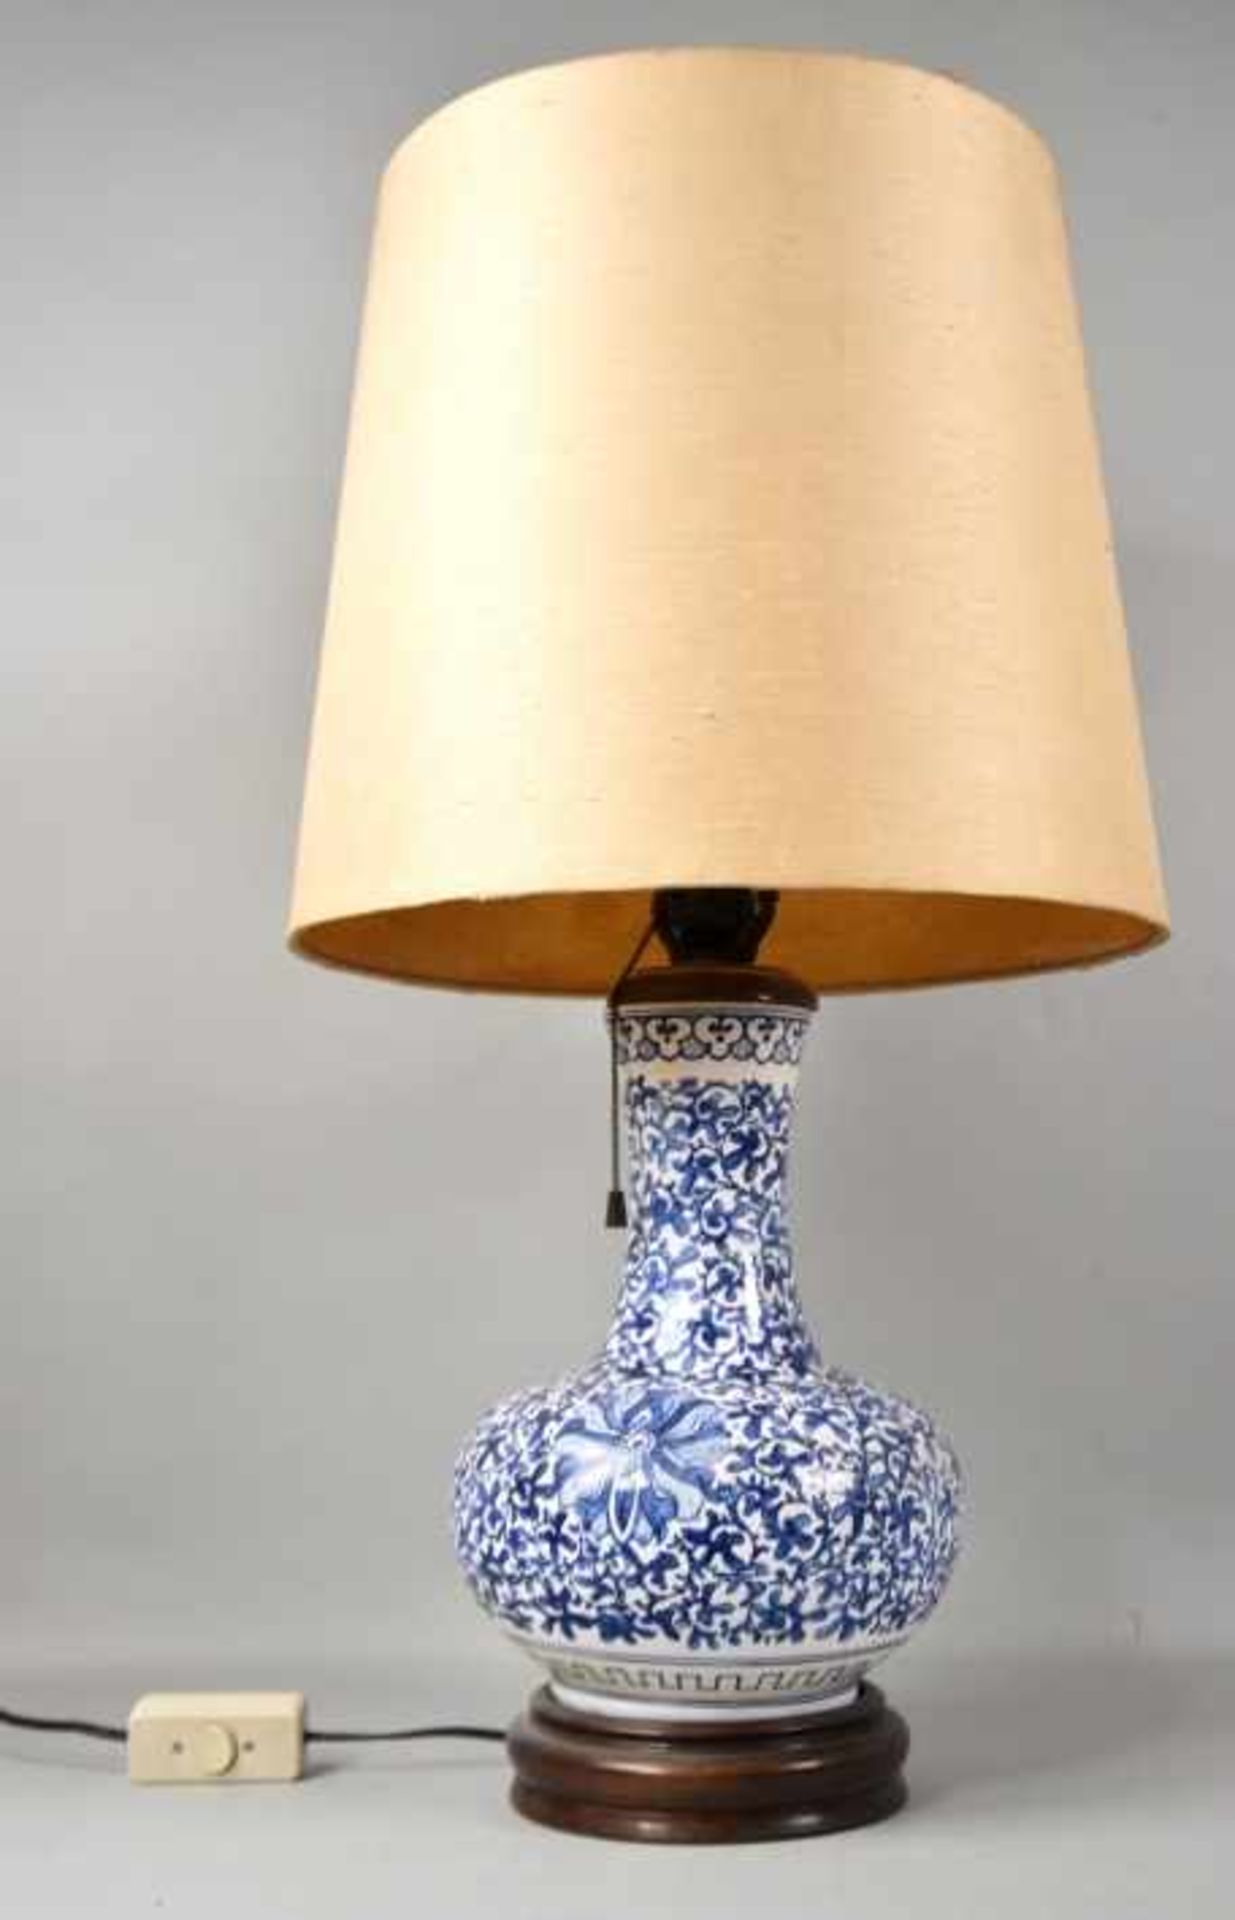 TISCHLAMPE Porzellan Vase als Fuß, dekoriert mit blauen Blüten auf Weiß, Stoffschirm, - Bild 2 aus 2